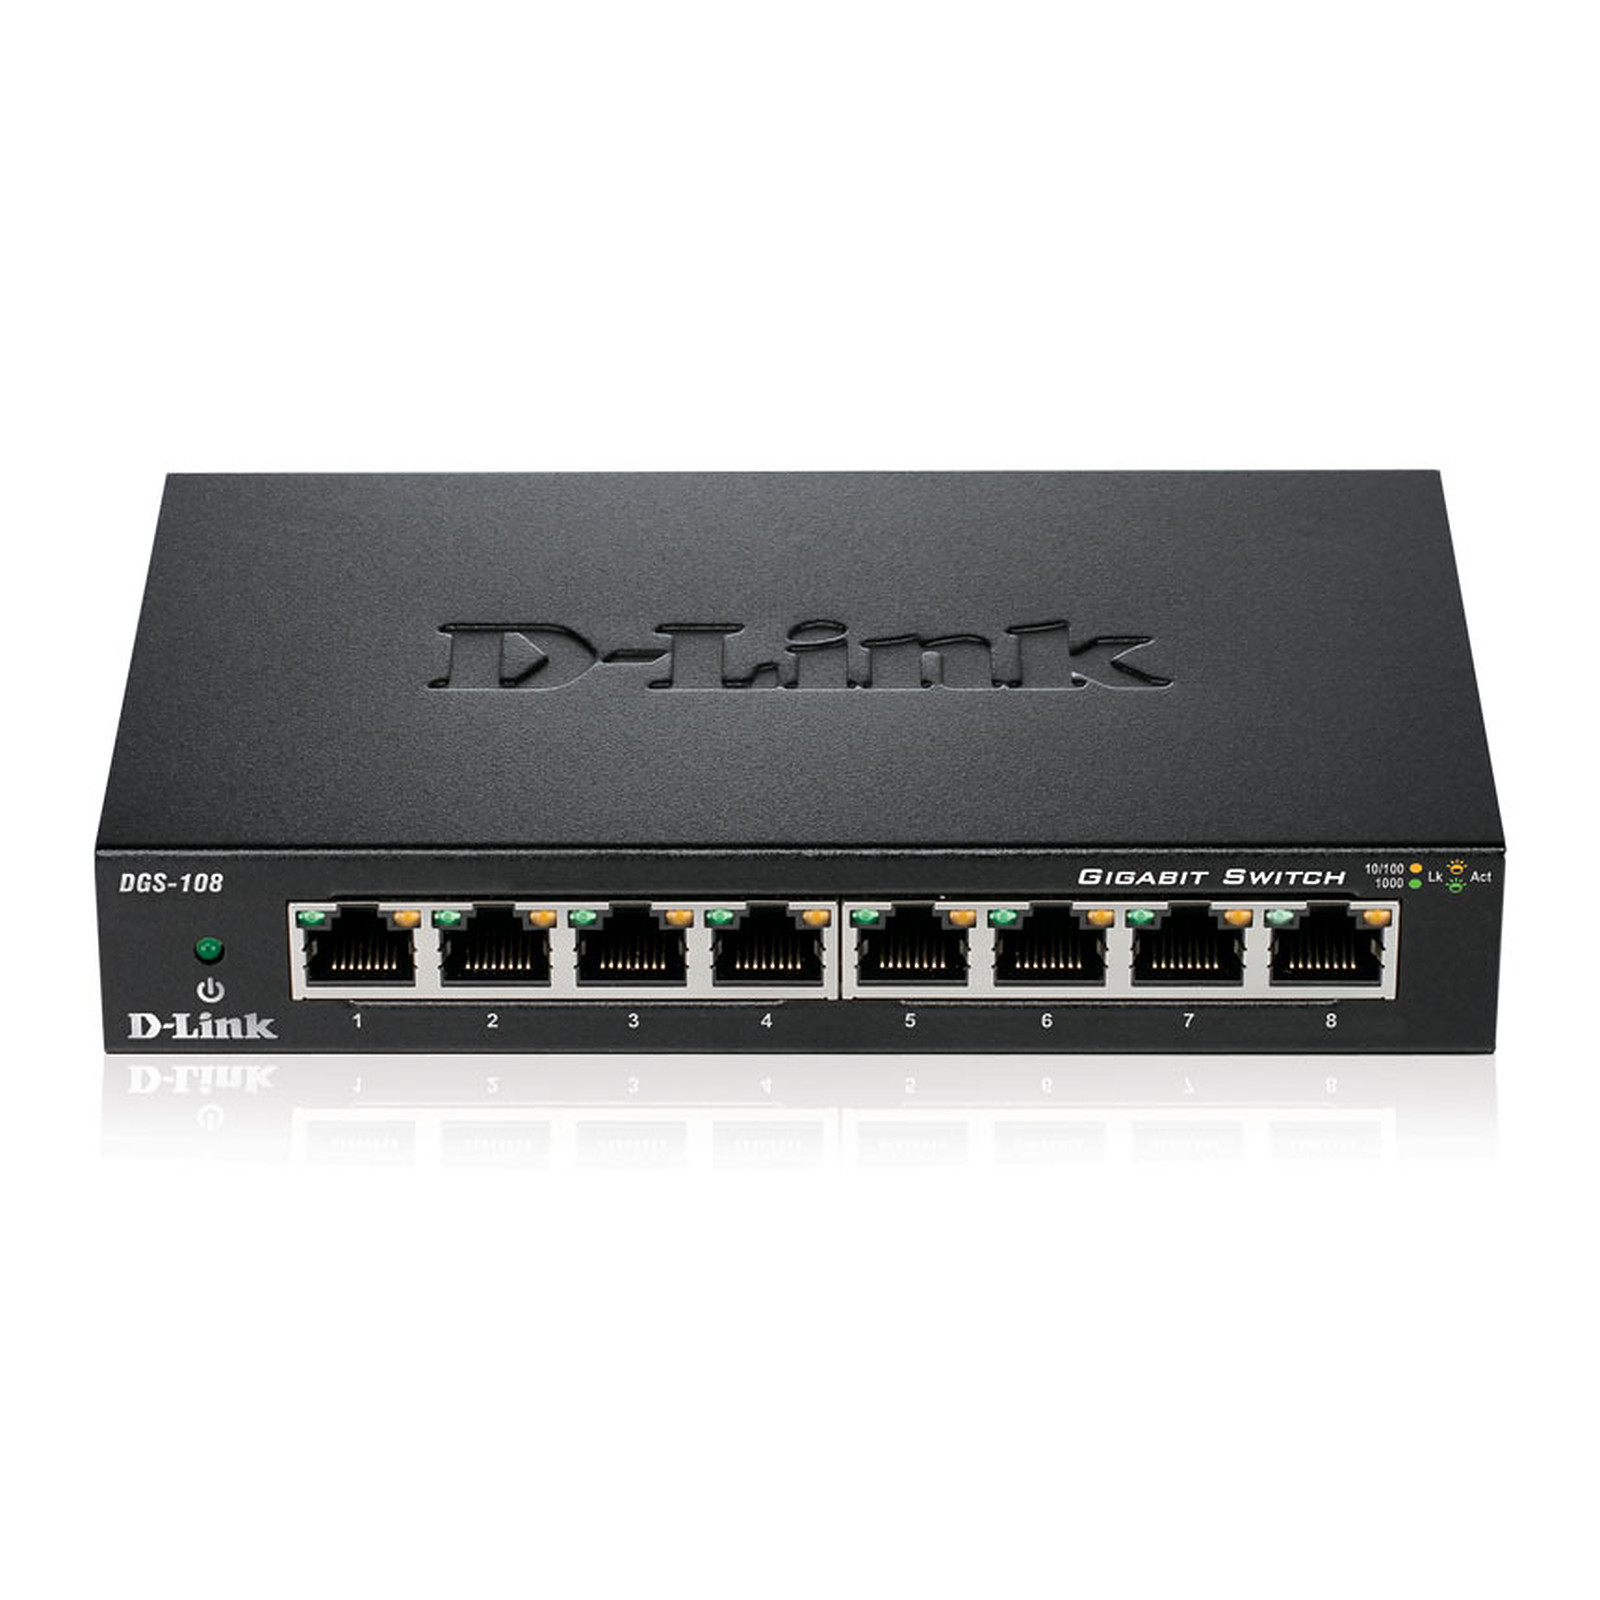 D-Link DGS-108 - Switch D-Link